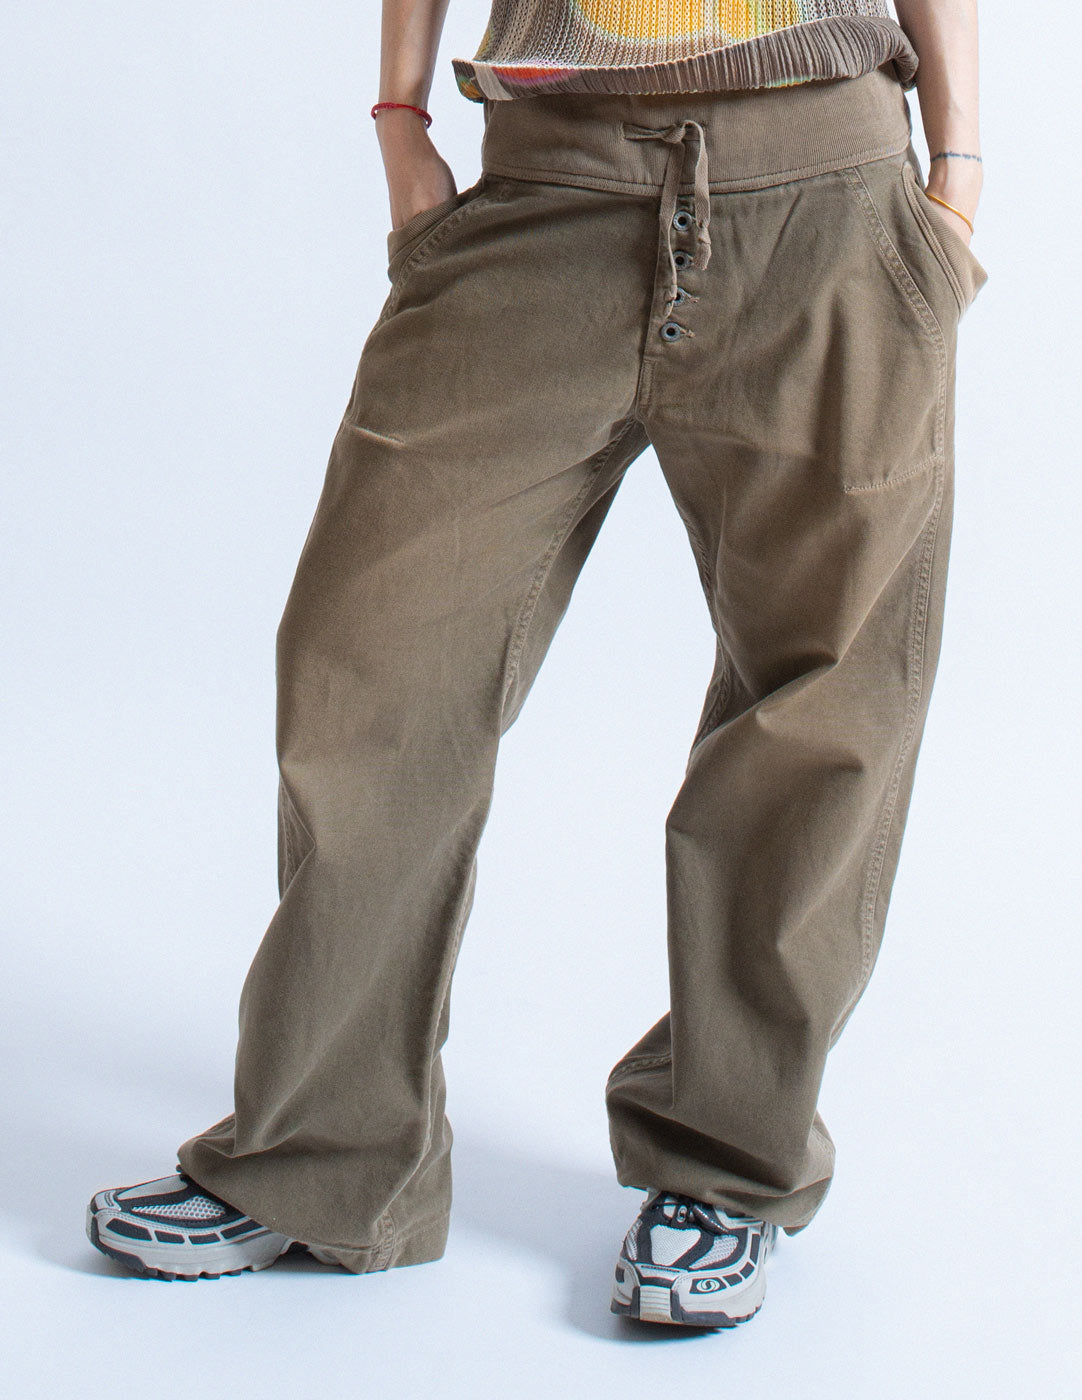 Kapital wide-legged cotton pants front detail